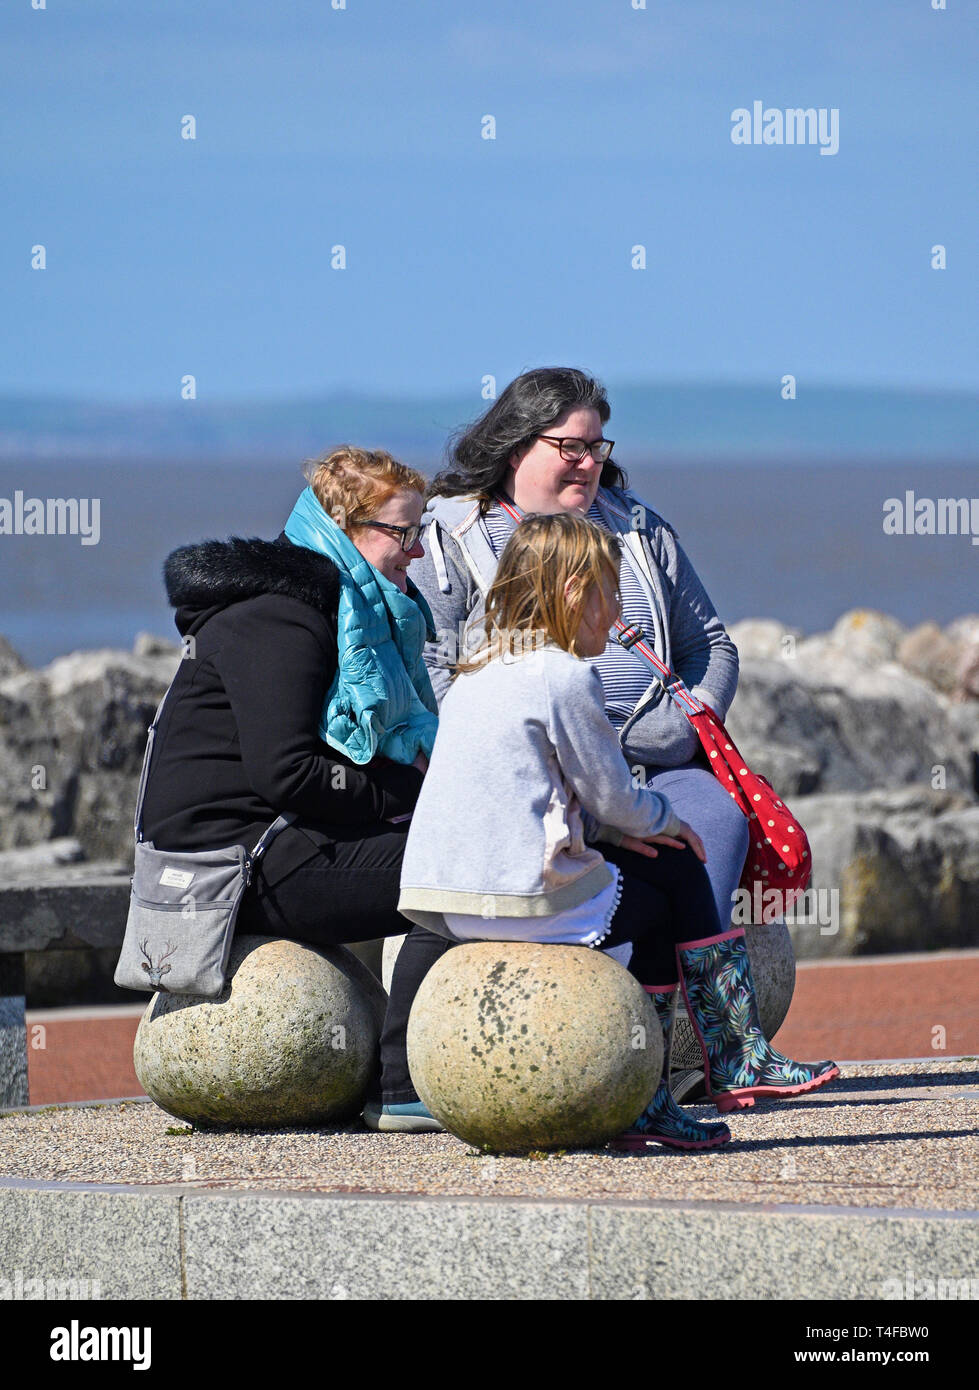 Drei Frauen sitzen auf Stein sitzen, in der Frühlingssonne. Stein, Mole, Promenade, Morecambe, Lancashire, England, Vereinigtes Königreich, Europa. Stockfoto